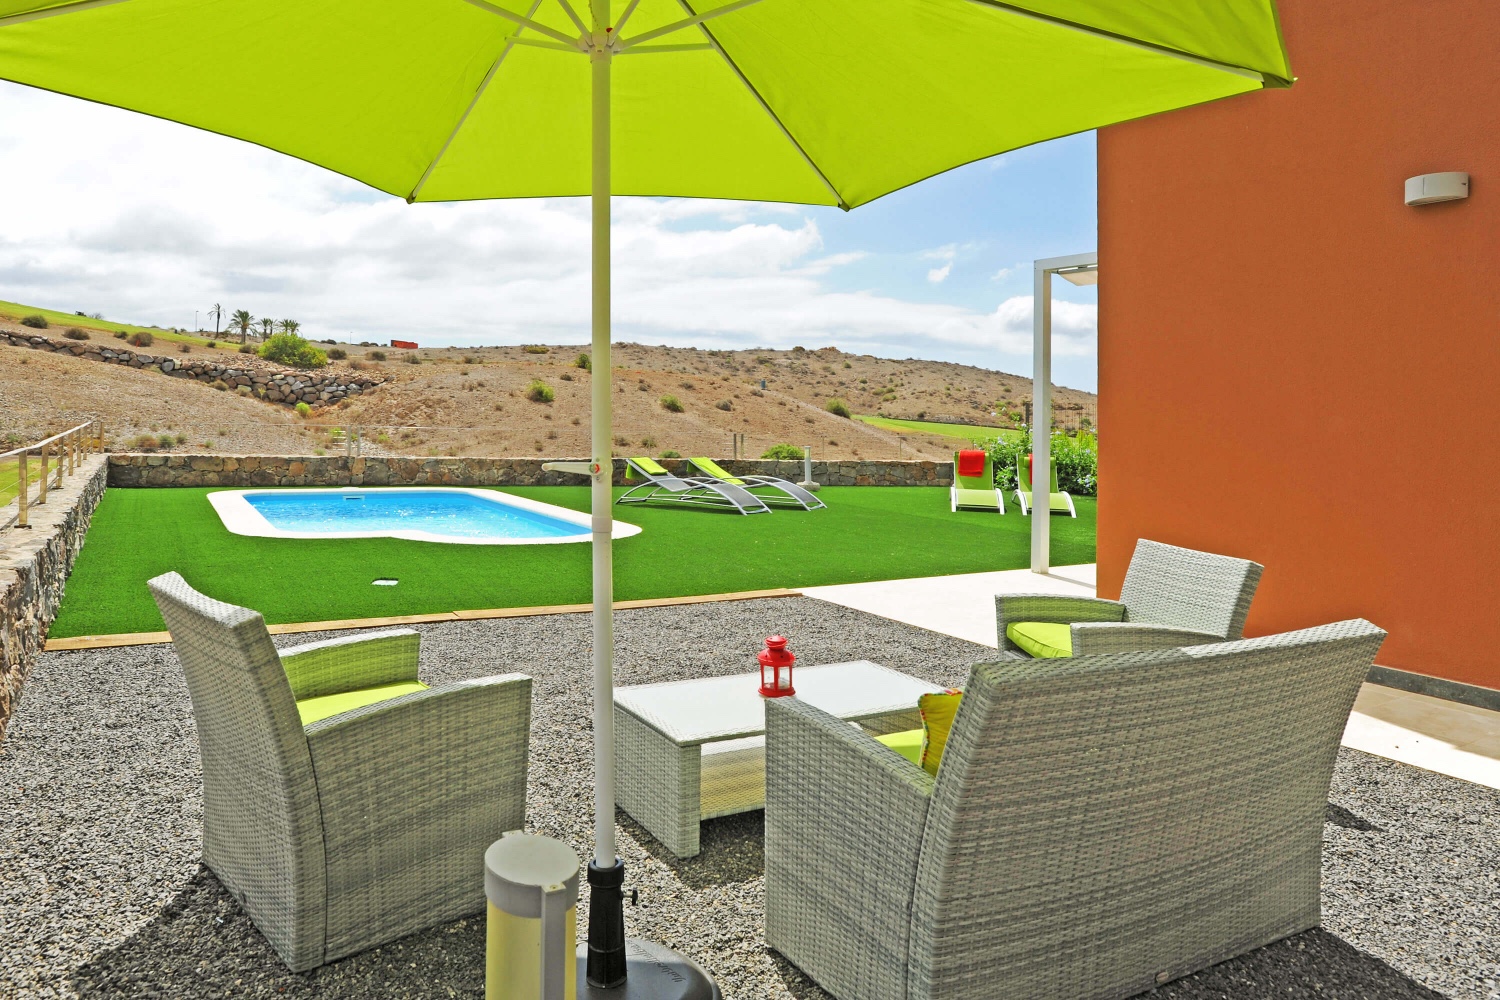 Huis met grote buitenruimte met zitje, privézwembad en een bevoorrechte locatie op de eerste lijn van de golfbaan